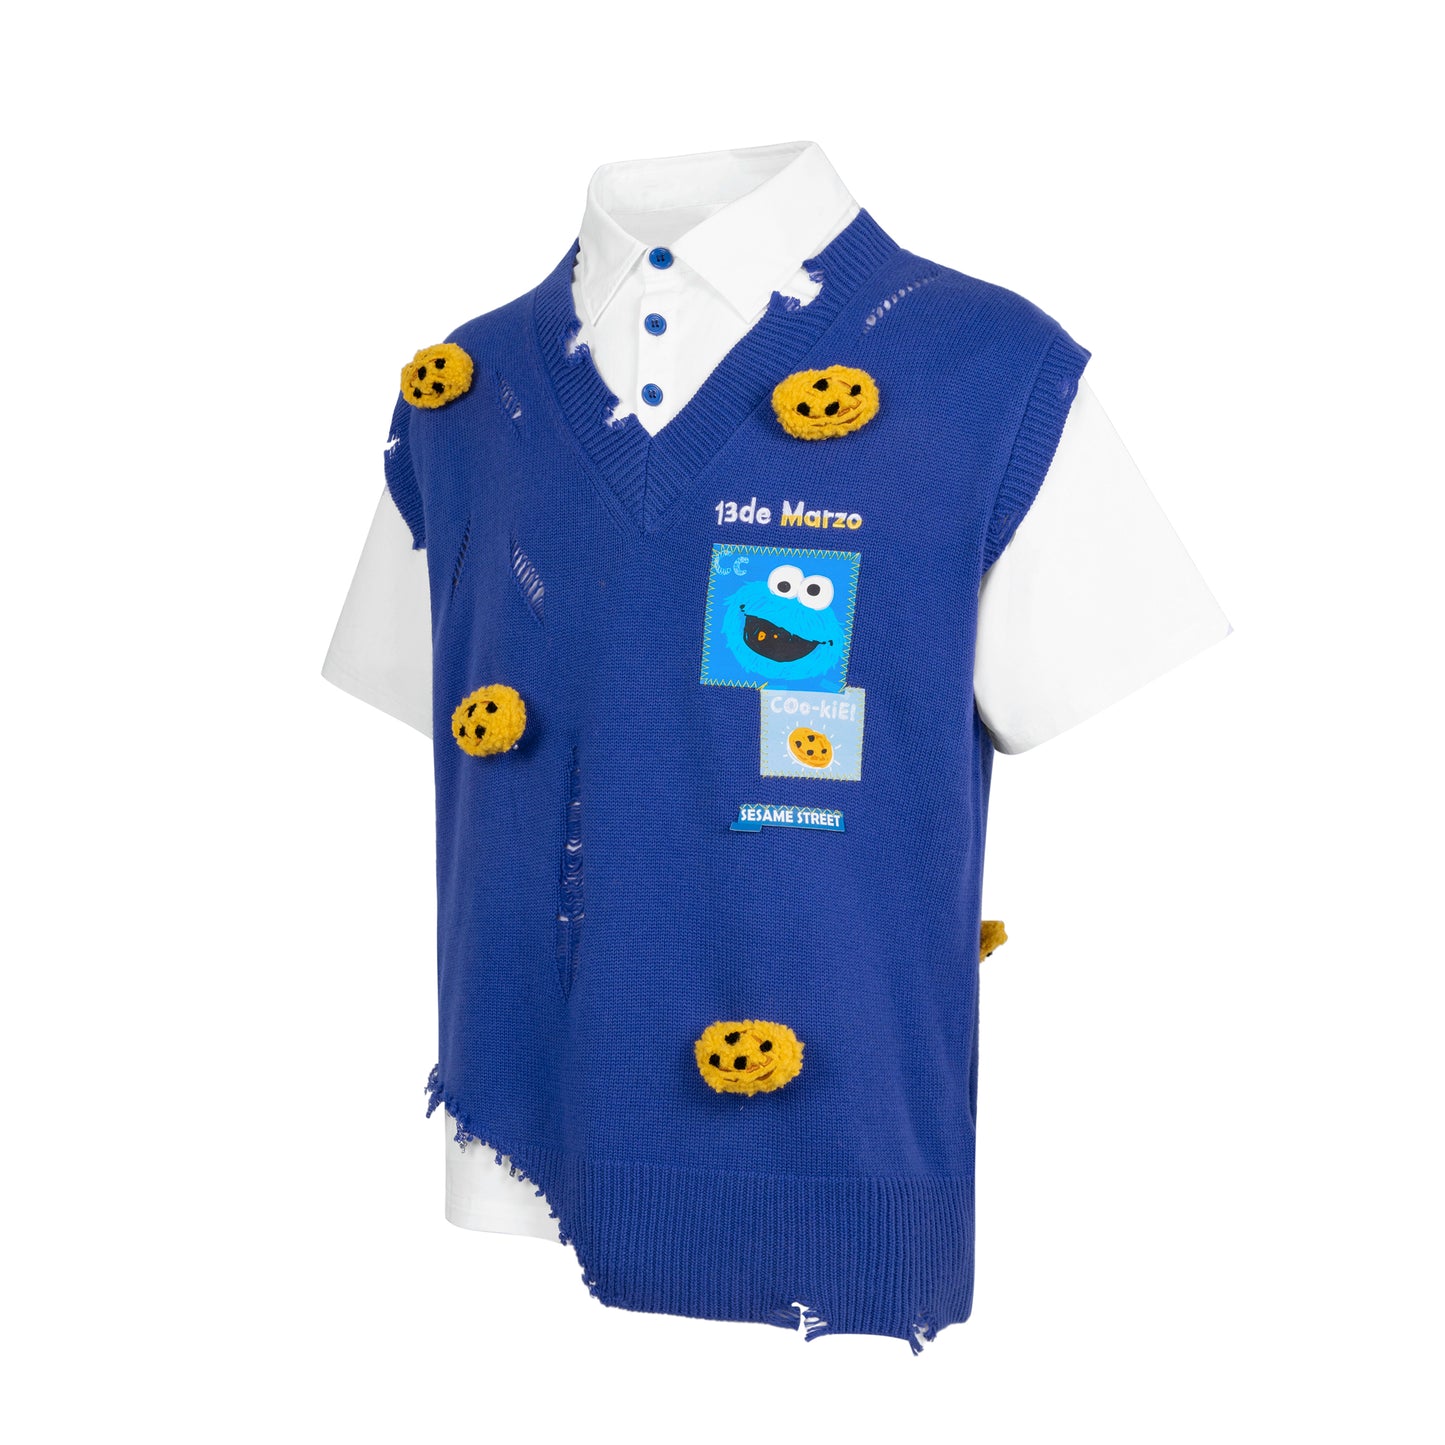 13DE MARZO Cookie Monster Knit Vest With T-shirt